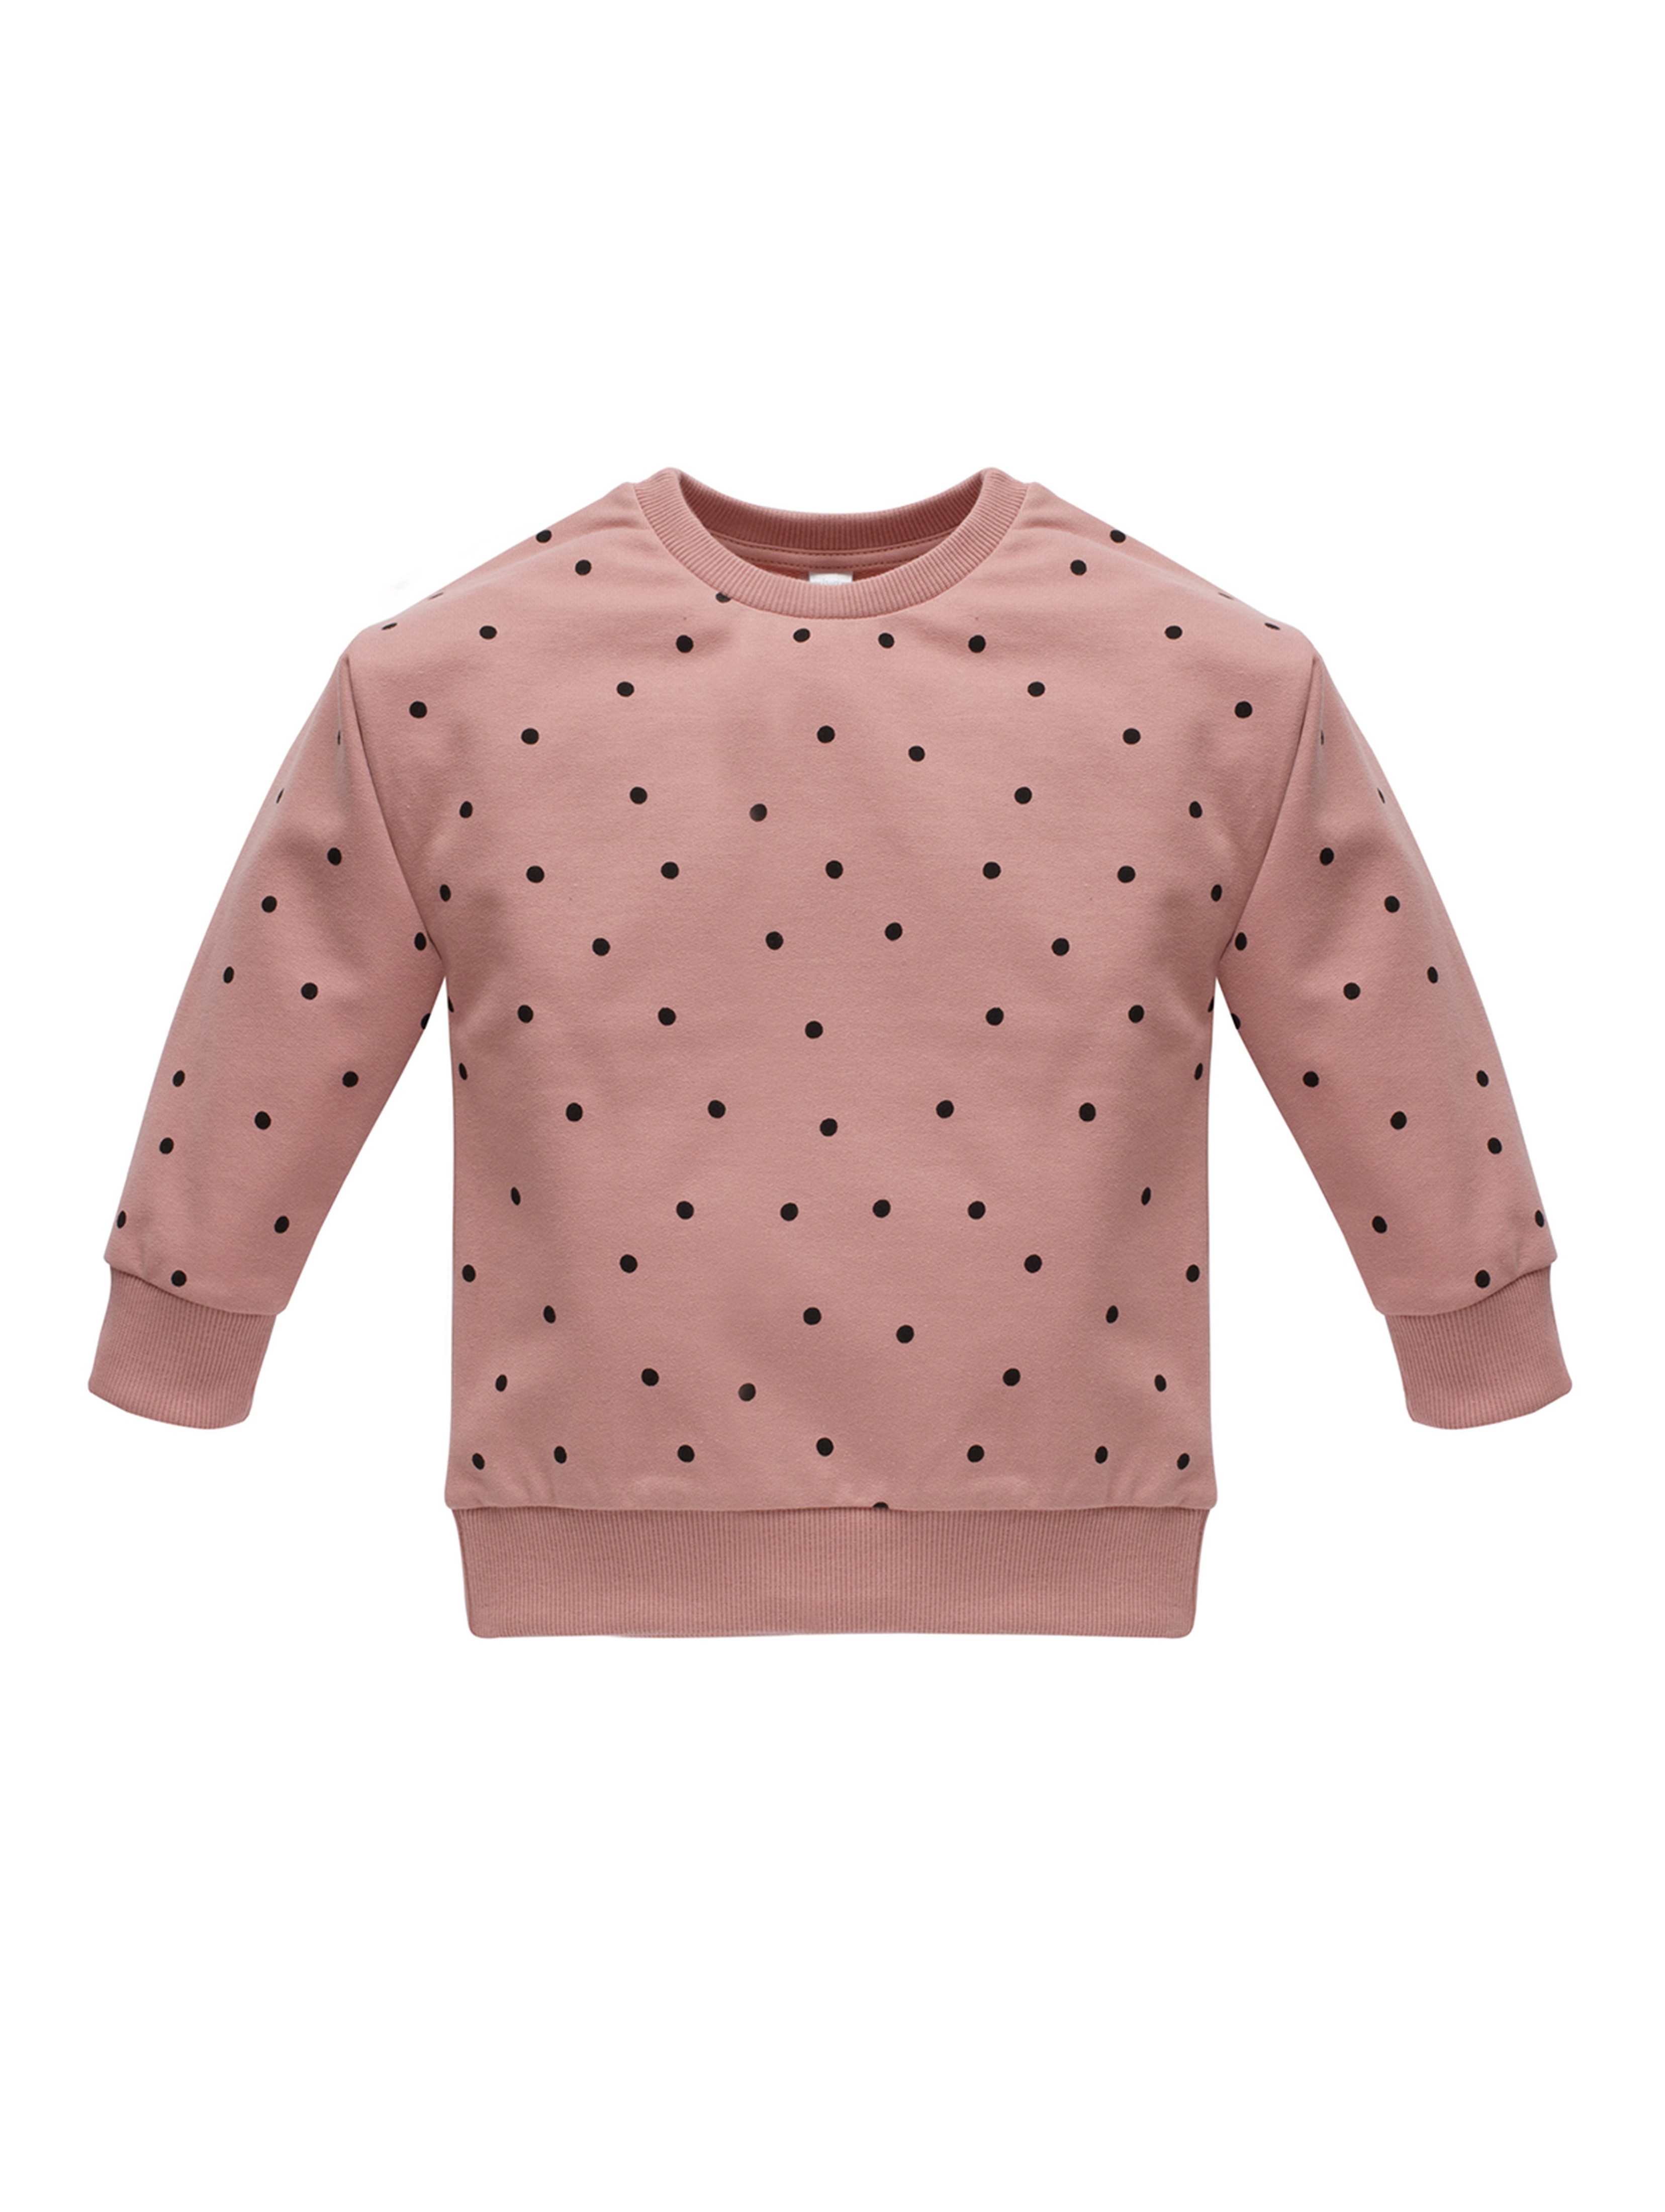 Bluza dla dziewczynki nierozpinana - różowa w groszki TRES BIEN - Pinokio